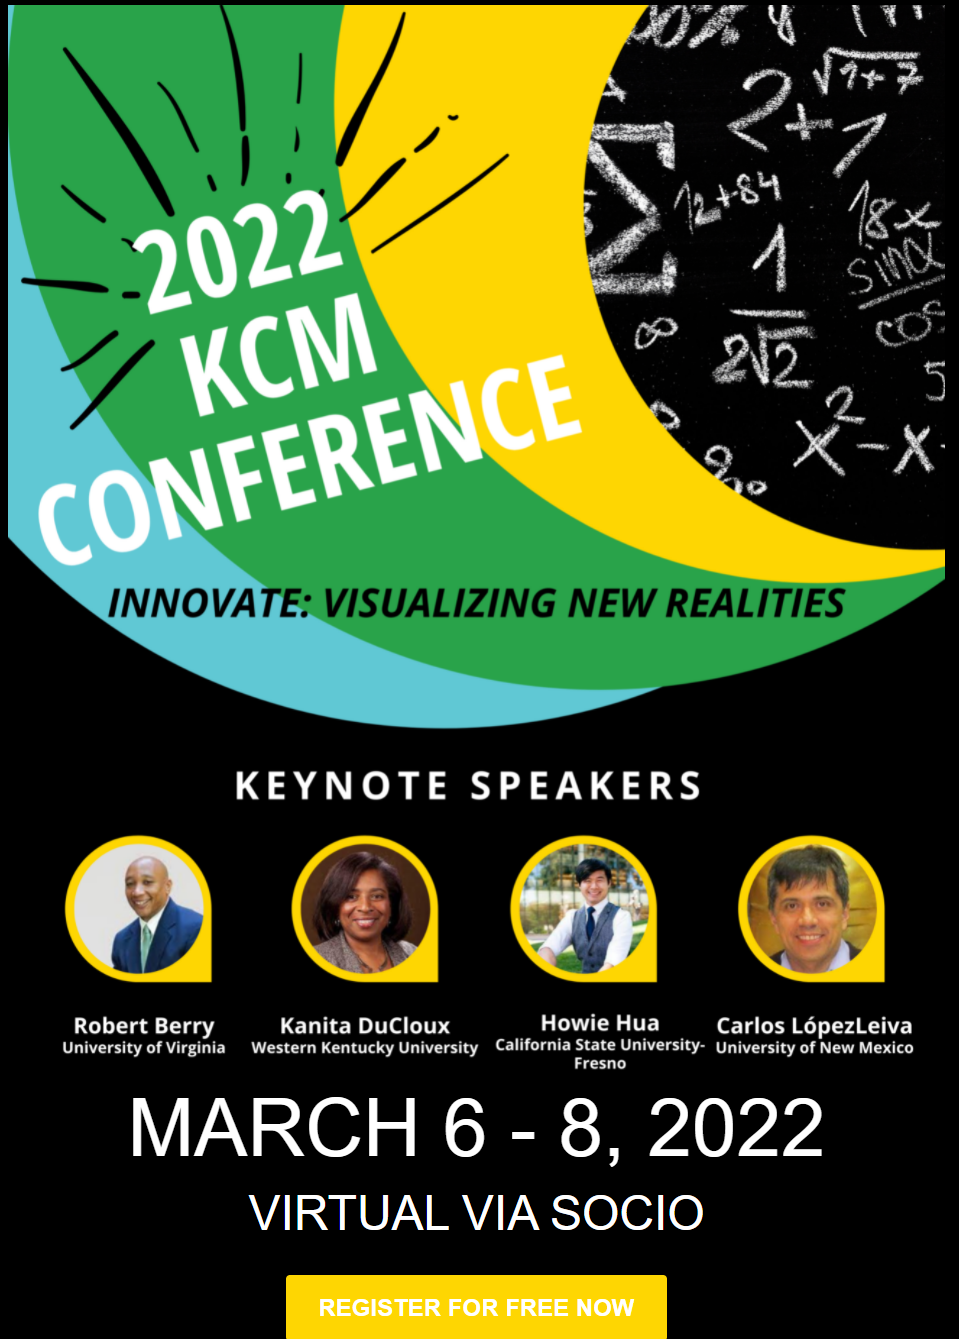 2021 KCM Conference Flyer